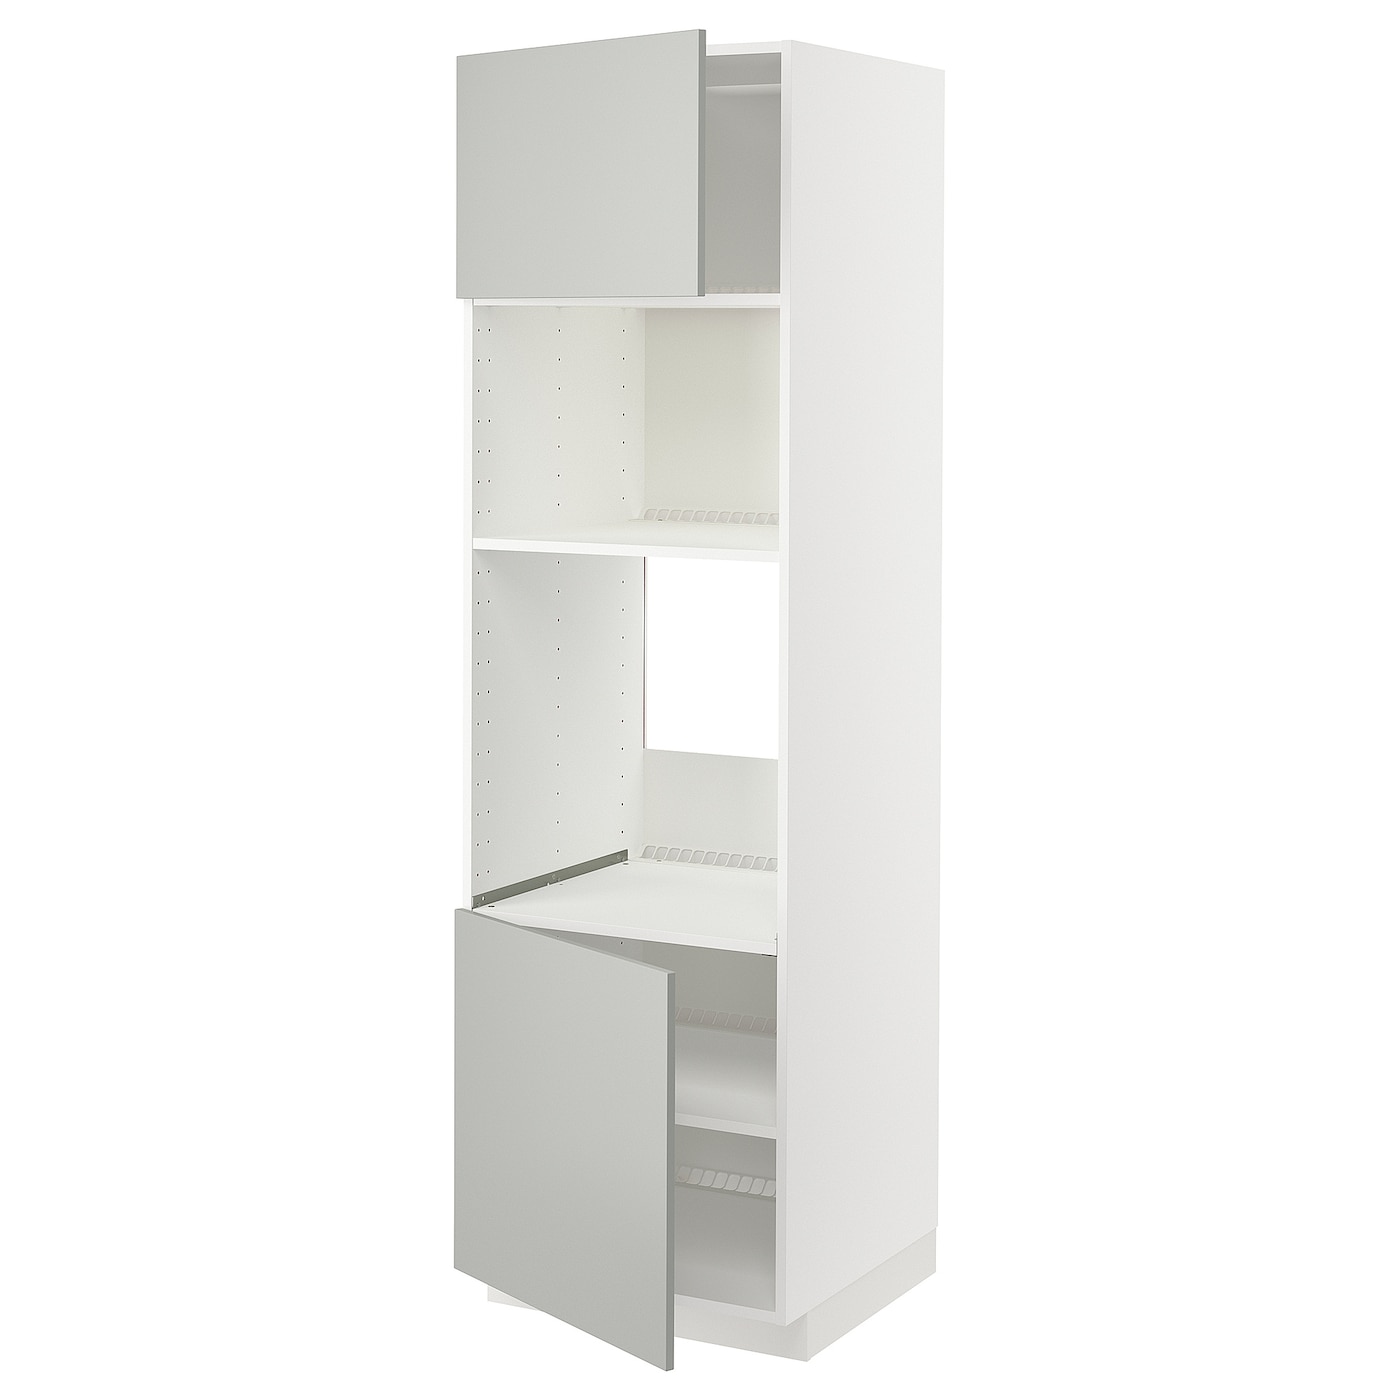 Шкаф - METOD IKEA/ МЕТОД ИКЕА,  208х60 см, белый/серый